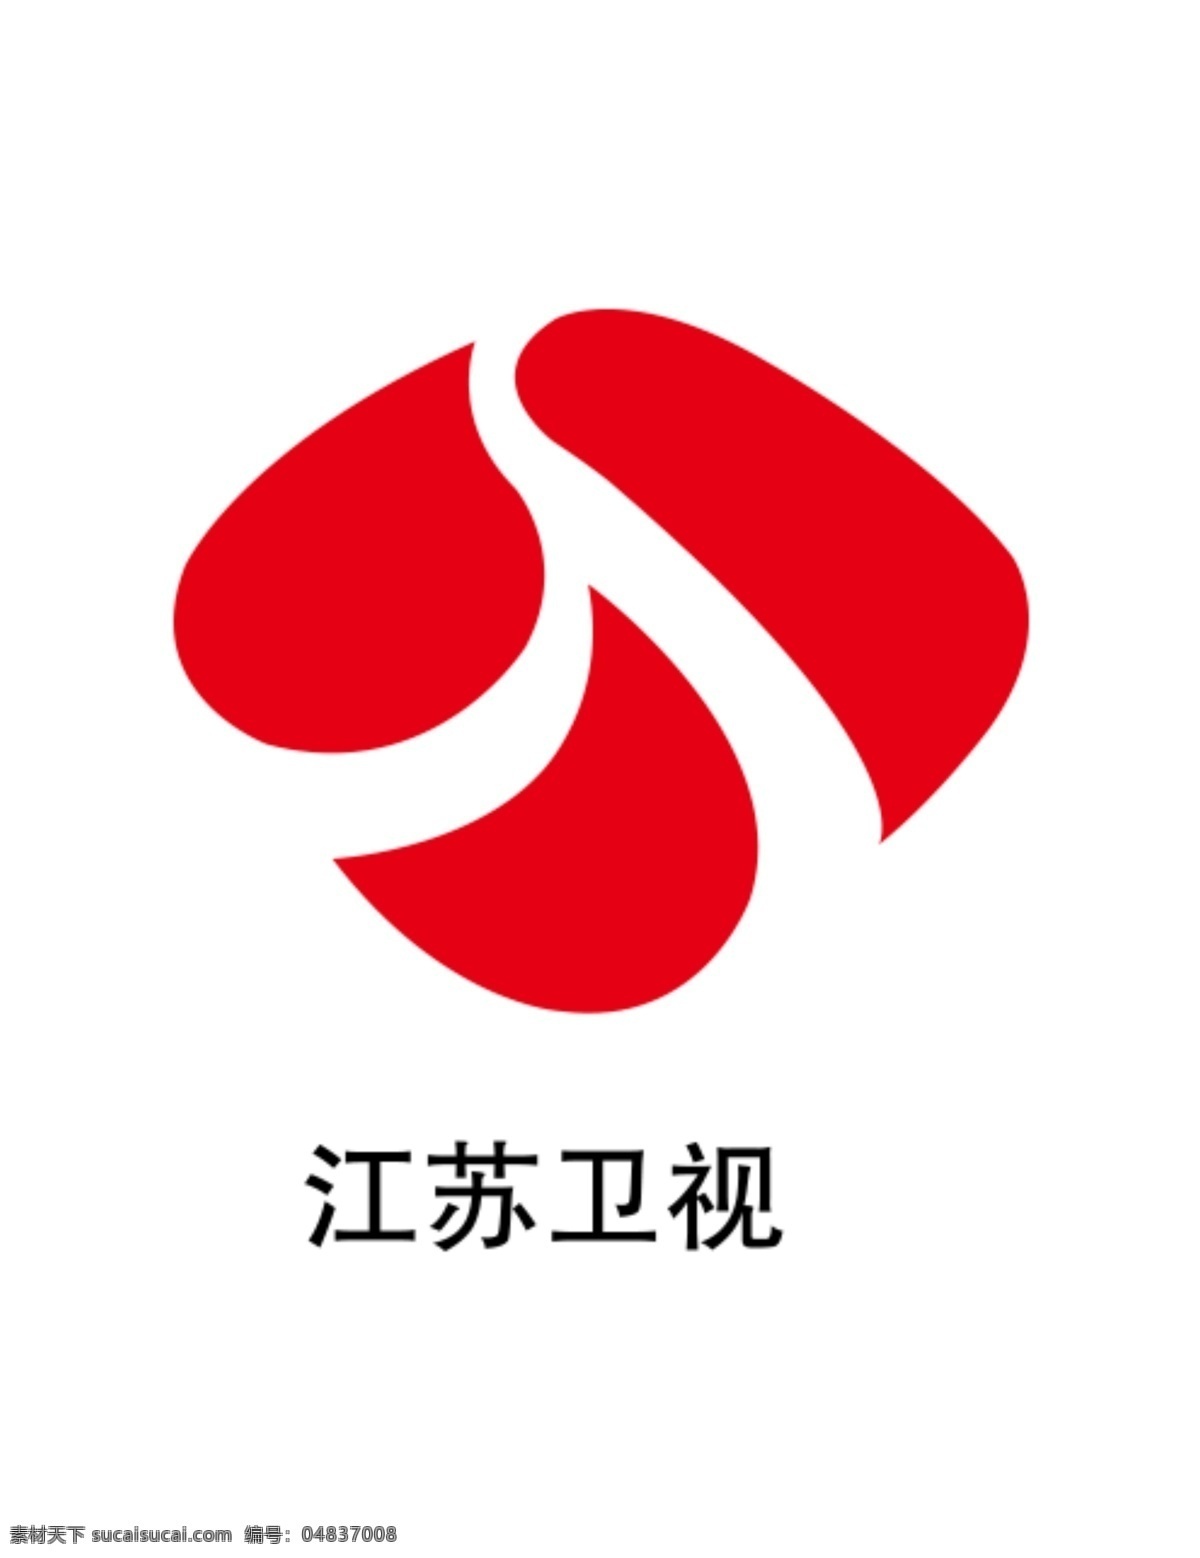 江苏 卫视 logo 江苏卫视标志 江苏电视台 江苏卫视台标